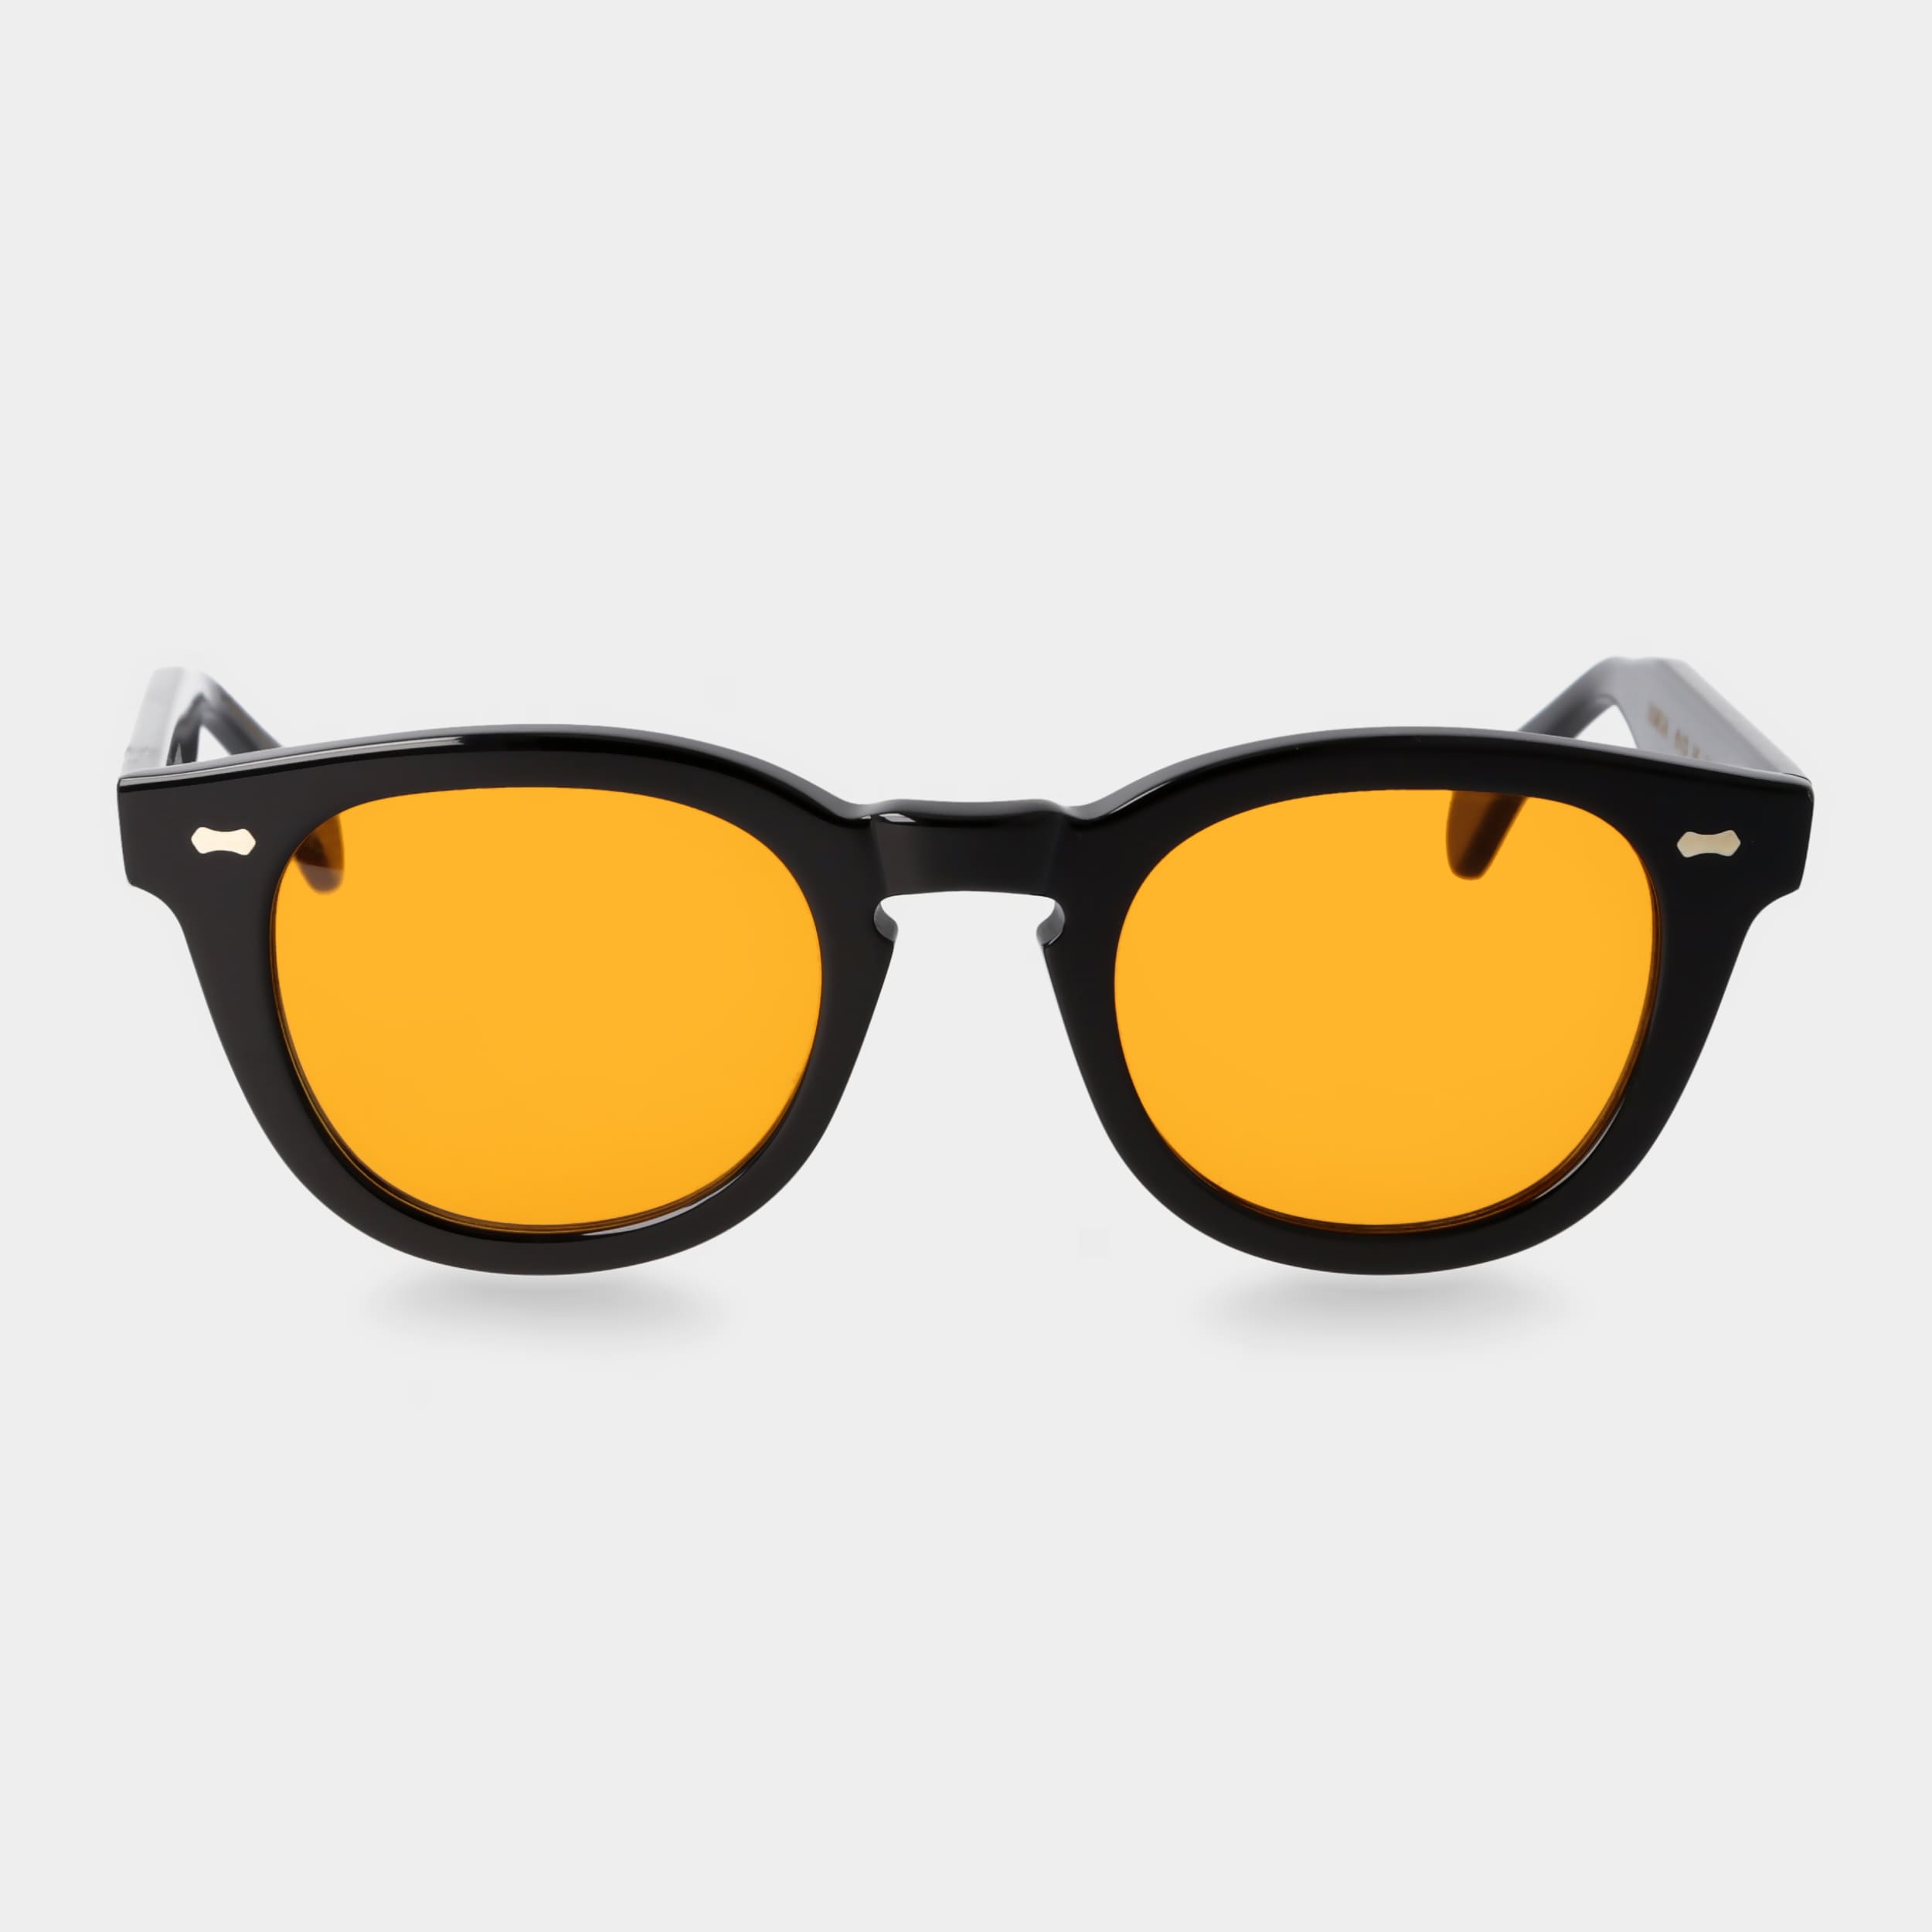 sunglasses-donegal-eco-black-orange-sustainable-tbd-eyewear-front